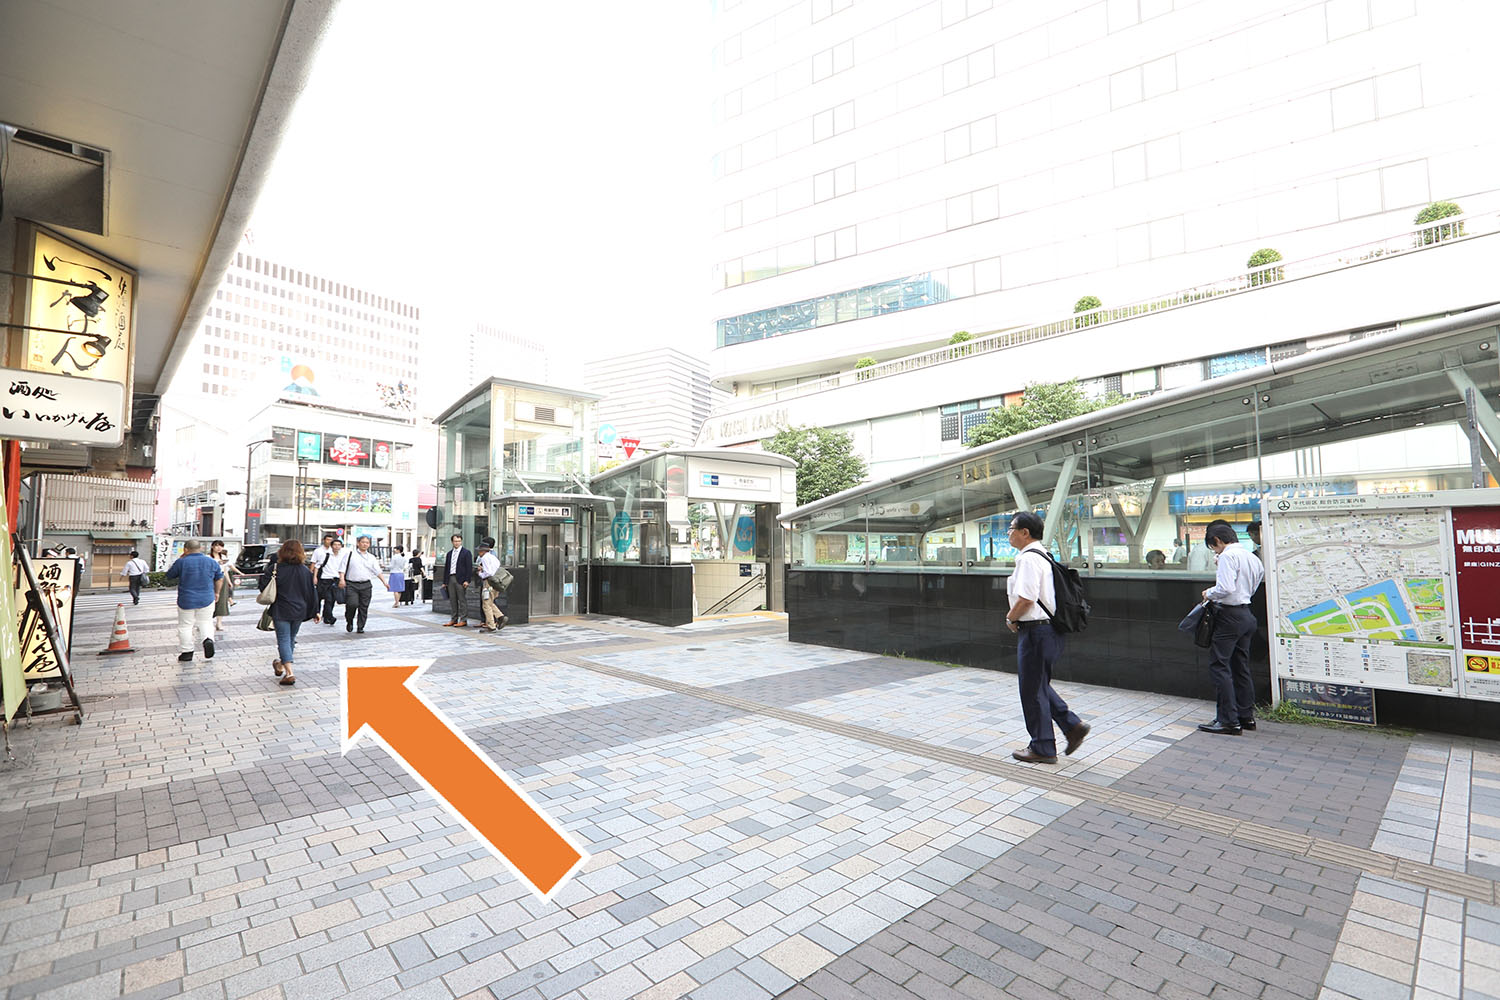 JR有楽町駅をでていただき、駅を背にして左に進みます。